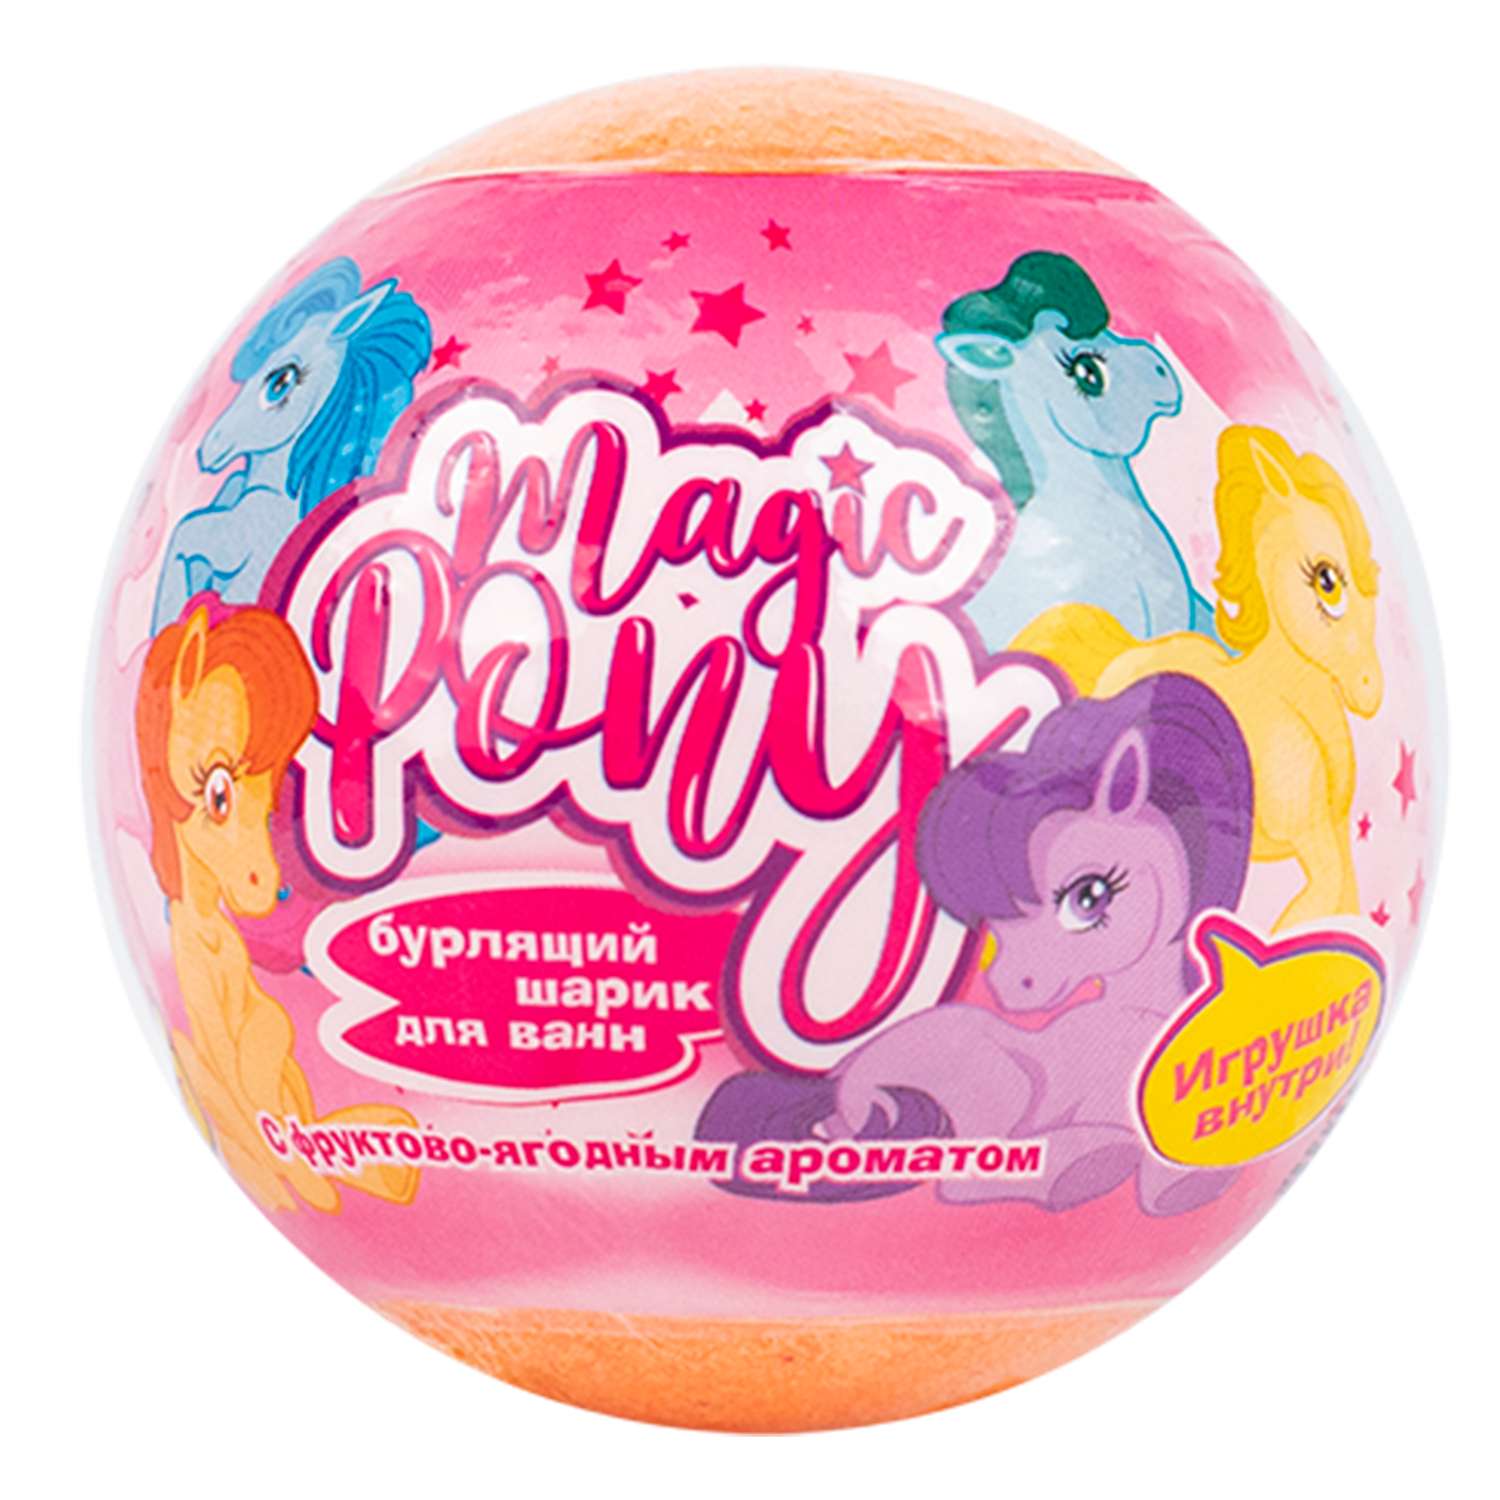 Соль Magic Pony Бурлящий шар с игрушкой 130г - фото 11